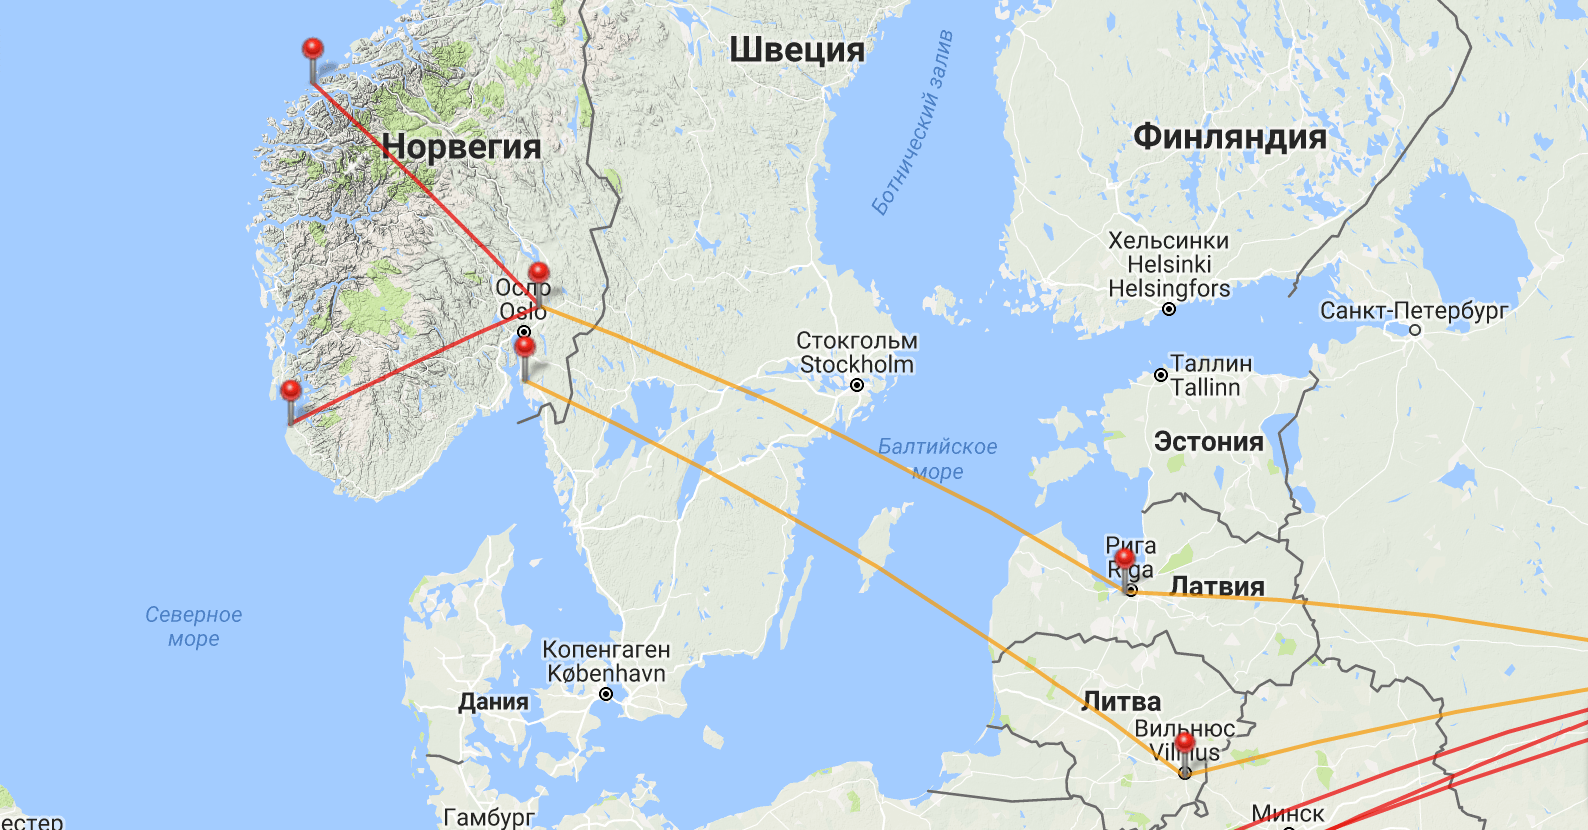 Сколько спб в мире. Финляндия и Санкт-Петербург на карте. Хельсинки Санкт-Петербург на карте. Путь от Санкт Петербурга до Финляндии. Карта Петербург Финляндия.